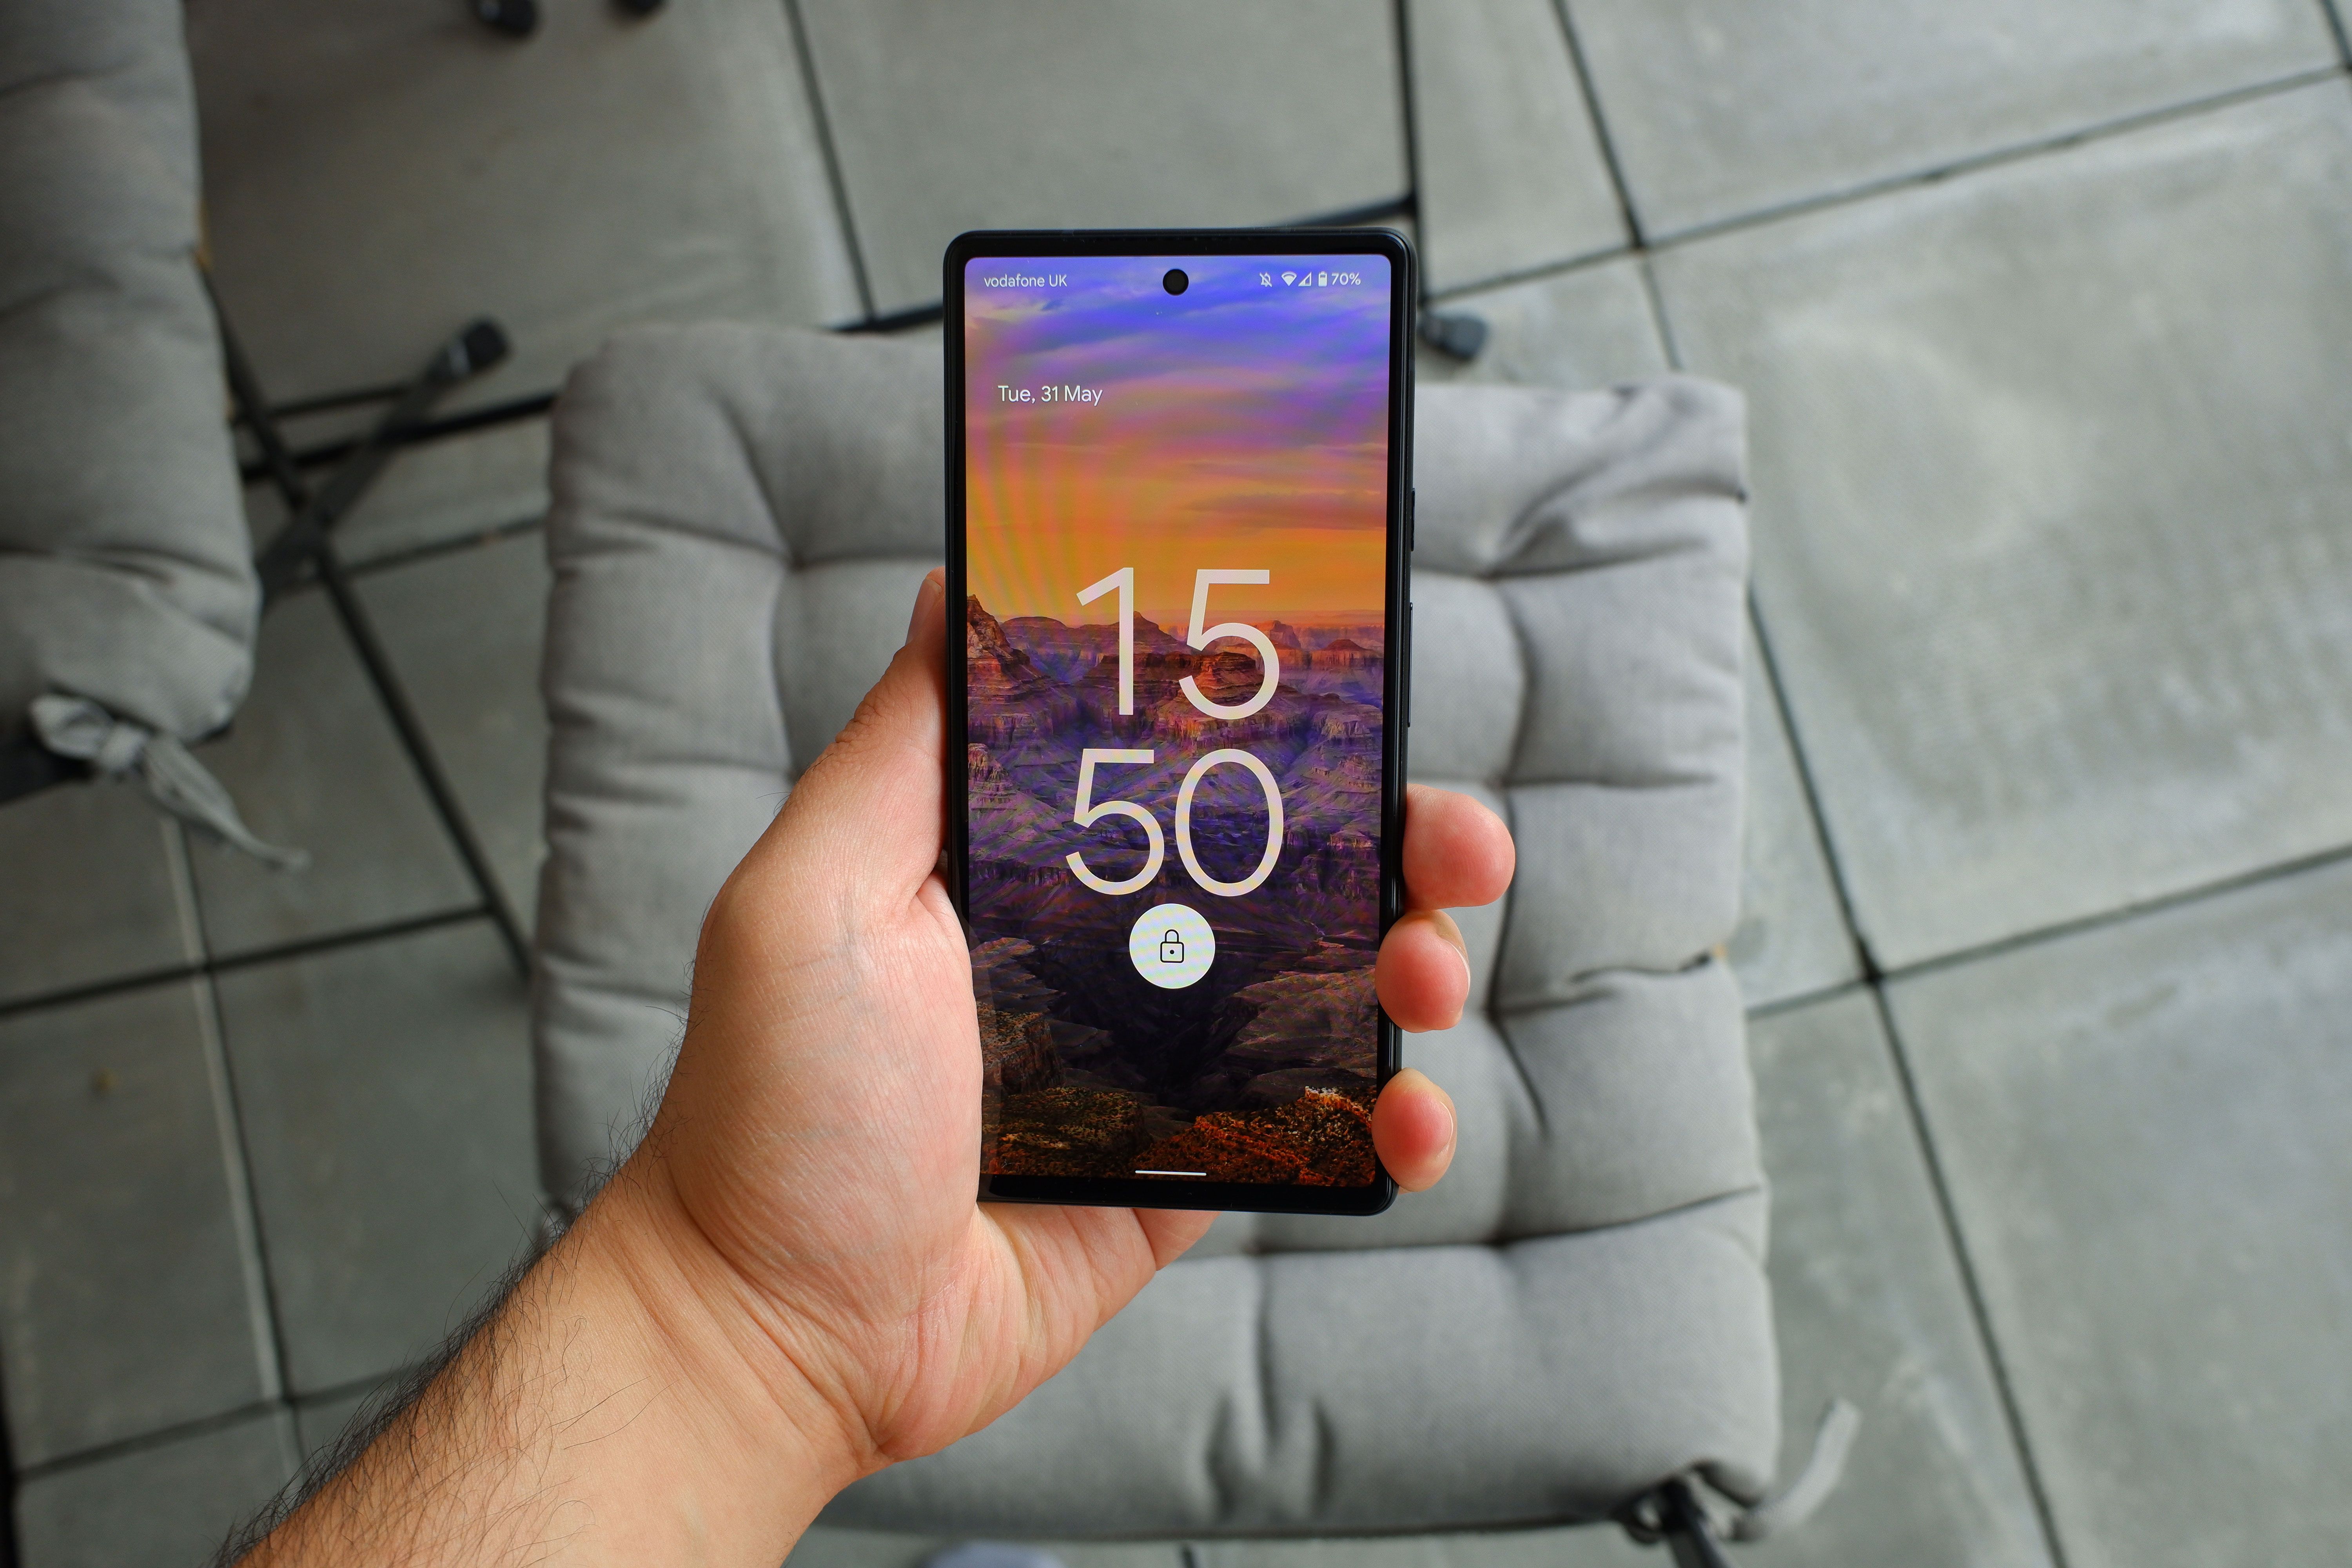 A Google Pixel 6 valójában Samsung okostelefon lesz?